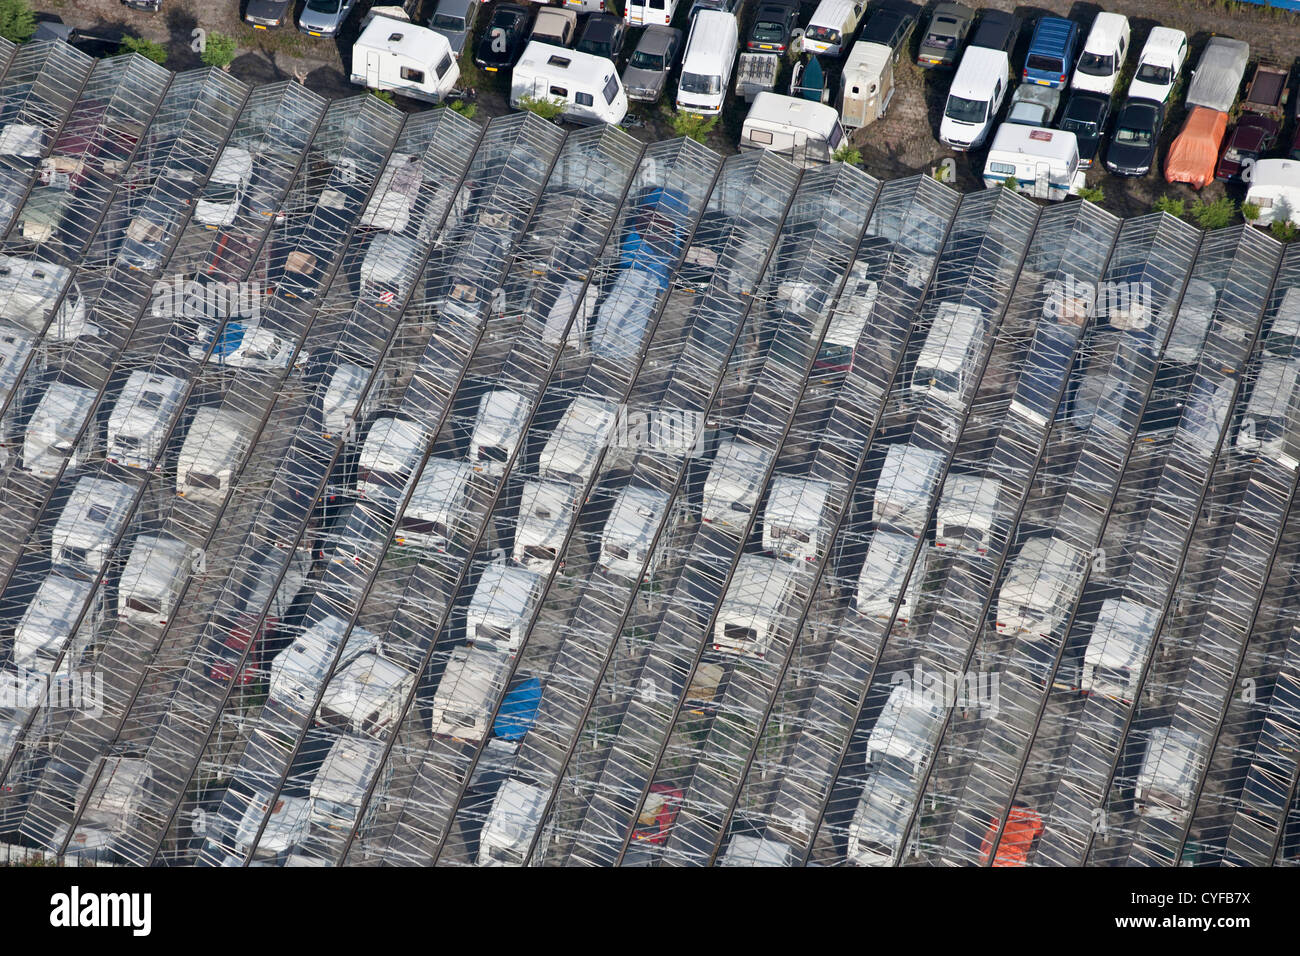 Les Pays-Bas, Maarssen. Parking gratuit pour les campeurs et camping-cars. Vue aérienne. Banque D'Images